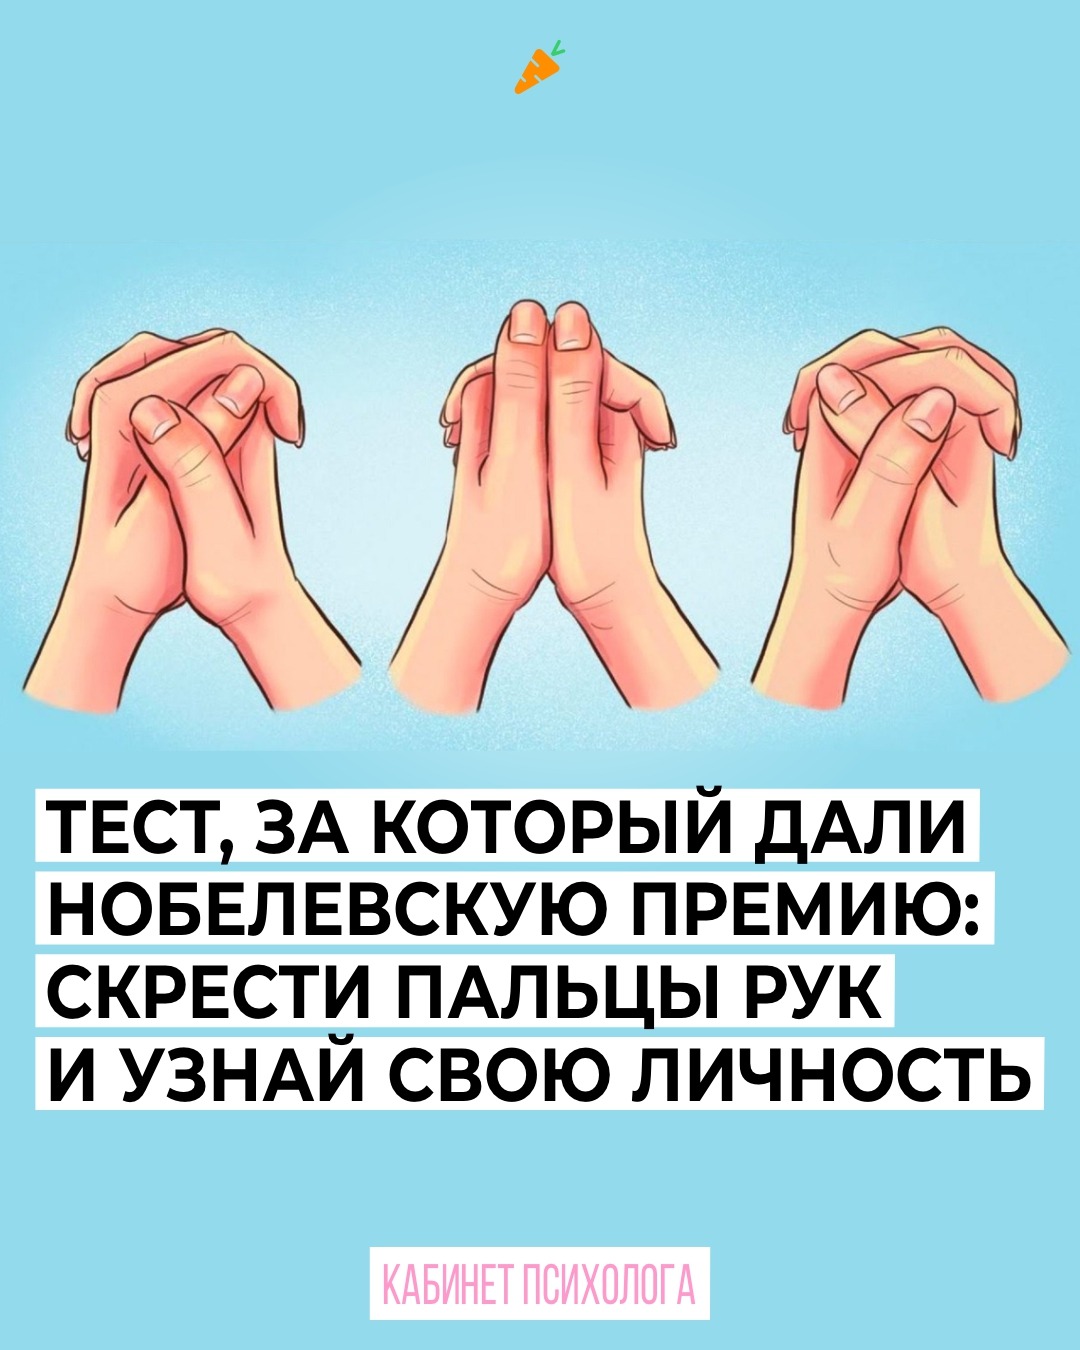 Скрещивание Пальцев Рук Значение В Психологии